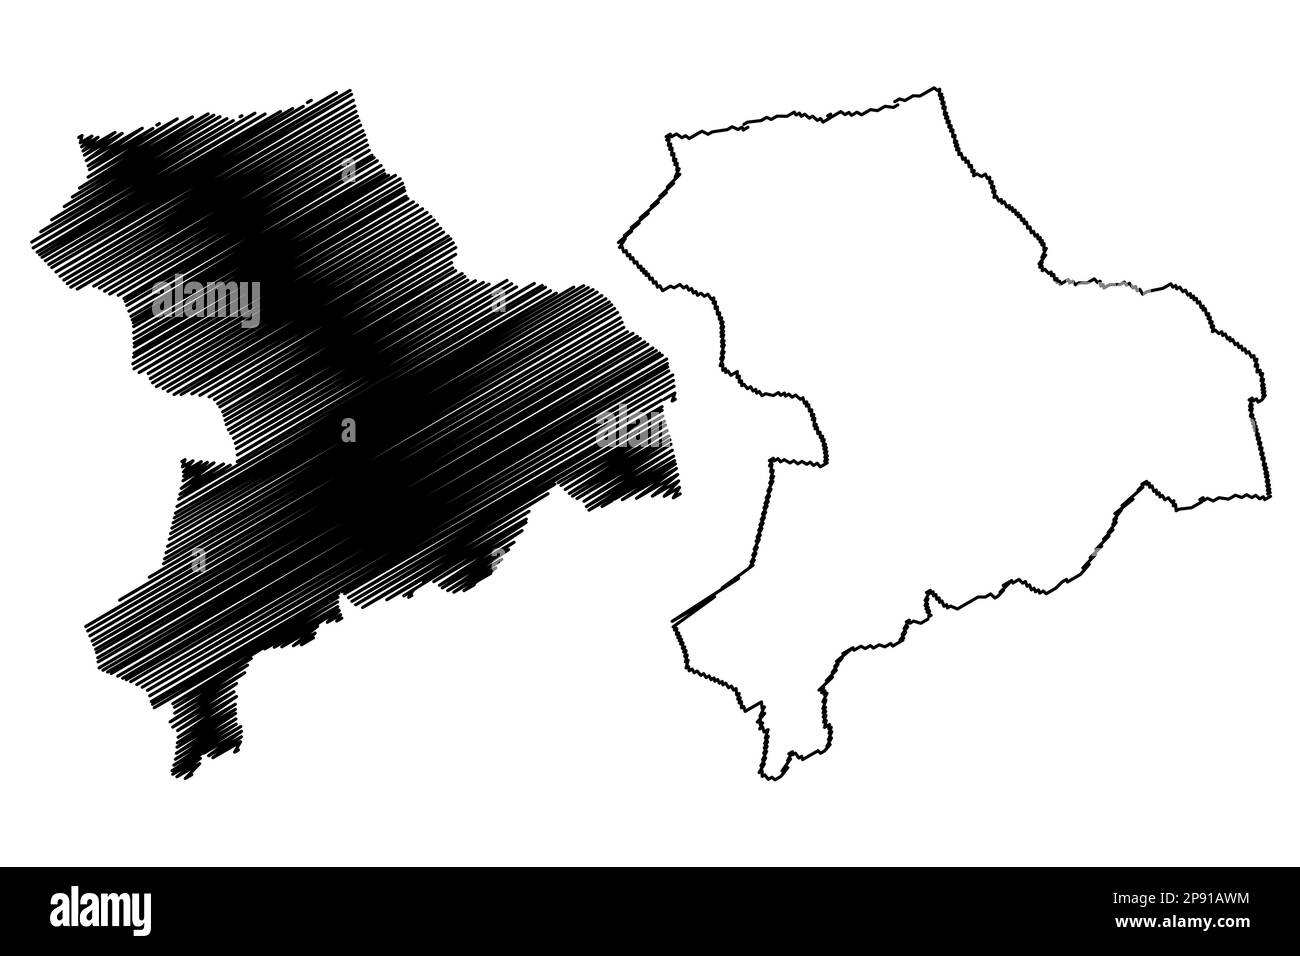 Vettore mappa londinese di Hackney (Regno Unito di Gran Bretagna e Irlanda del Nord, contea e regione Ceremonial Greater London, Inghilterra) illu Illustrazione Vettoriale